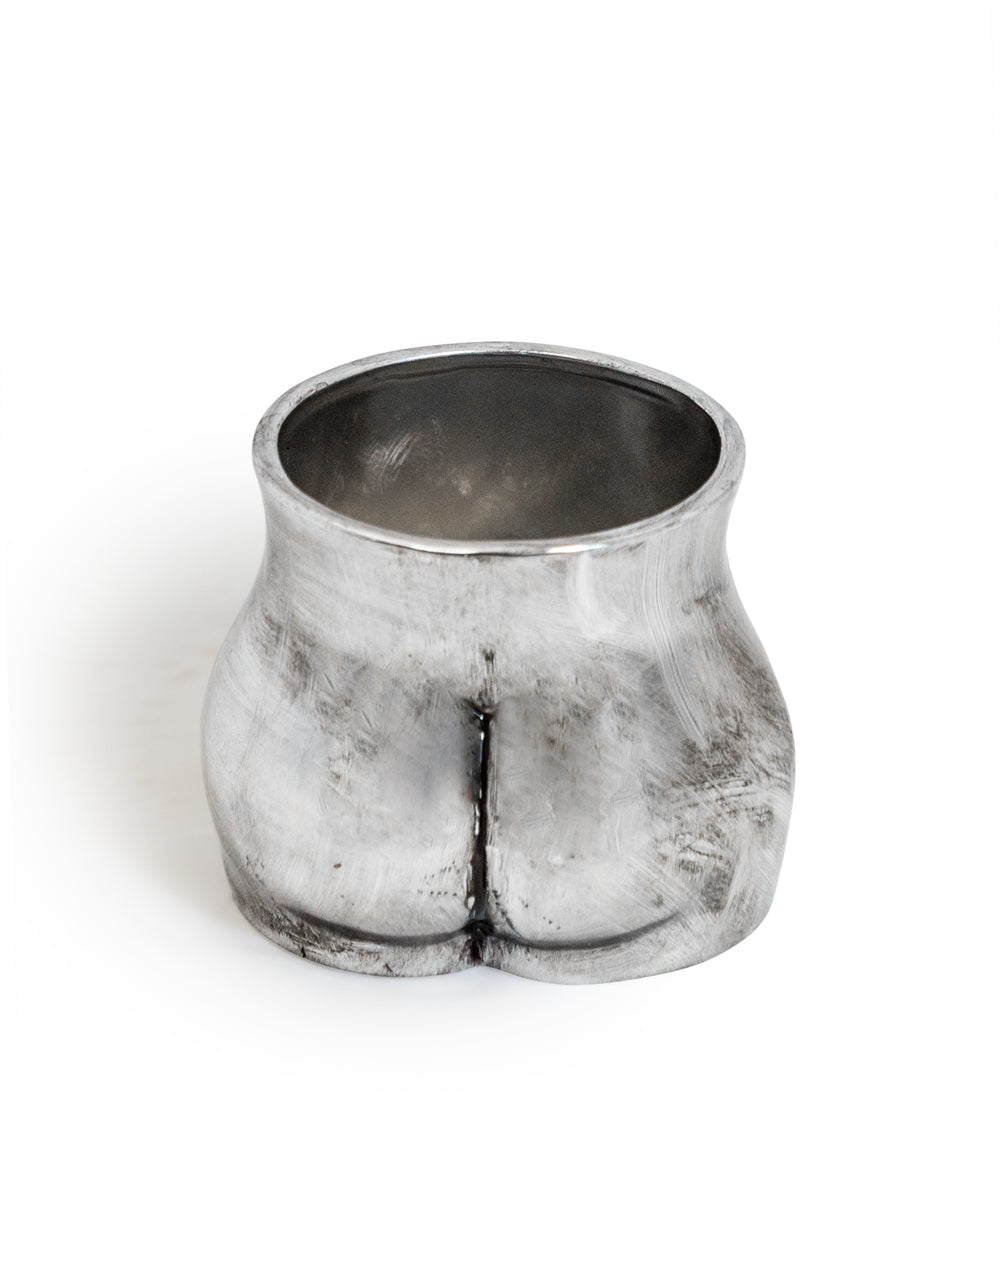 Antique Silver Medium Booty Flower Pot/Storage Jar